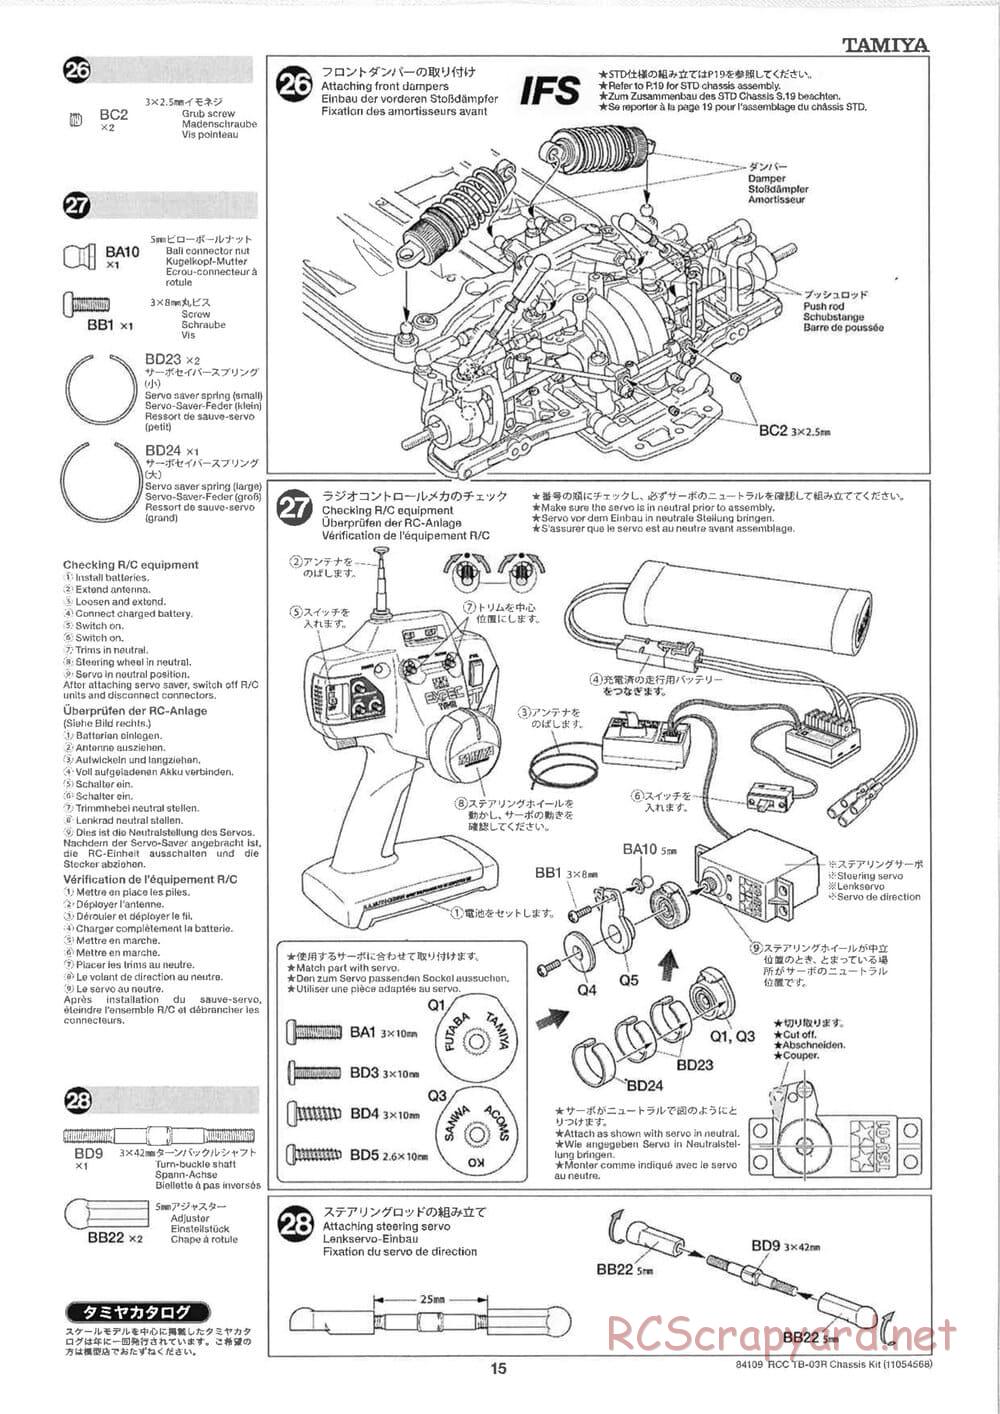 Tamiya - TB-03R Chassis - Manual - Page 15